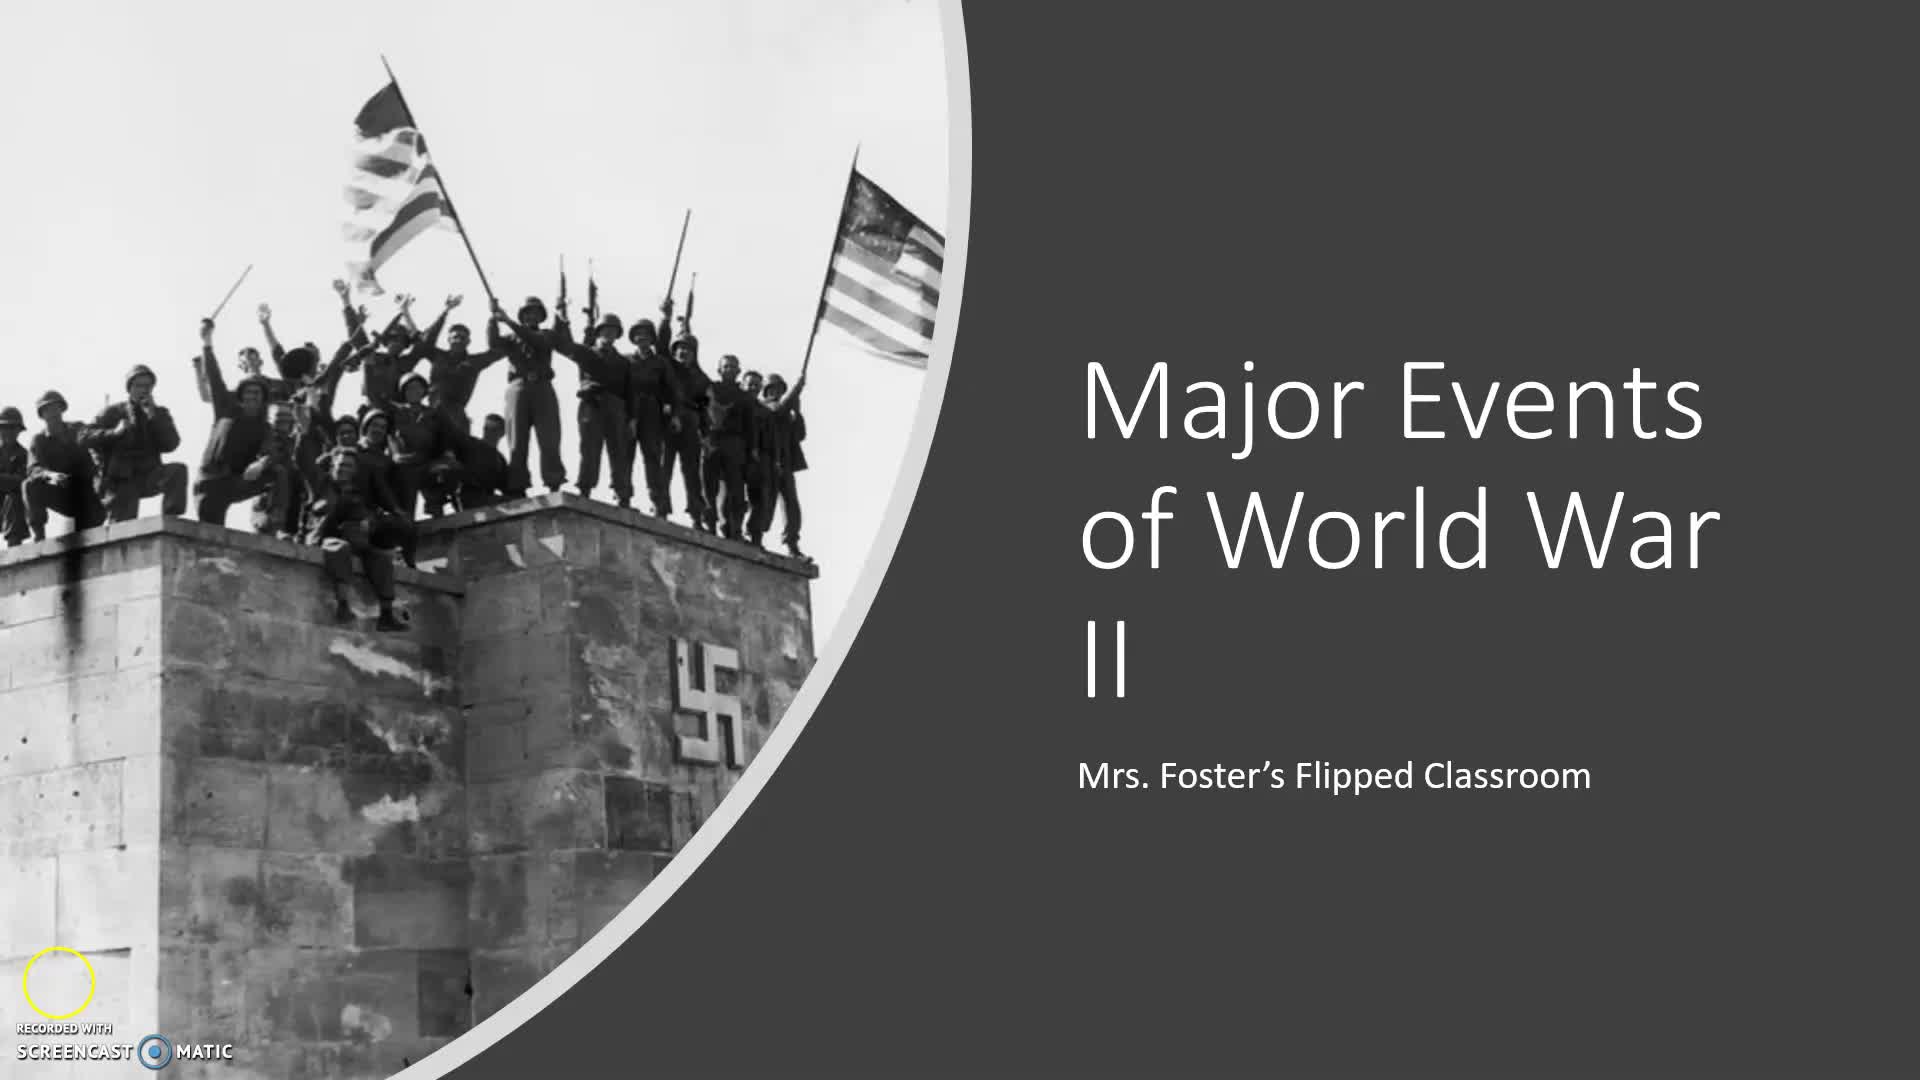 Major Events of World War II flipped classroom